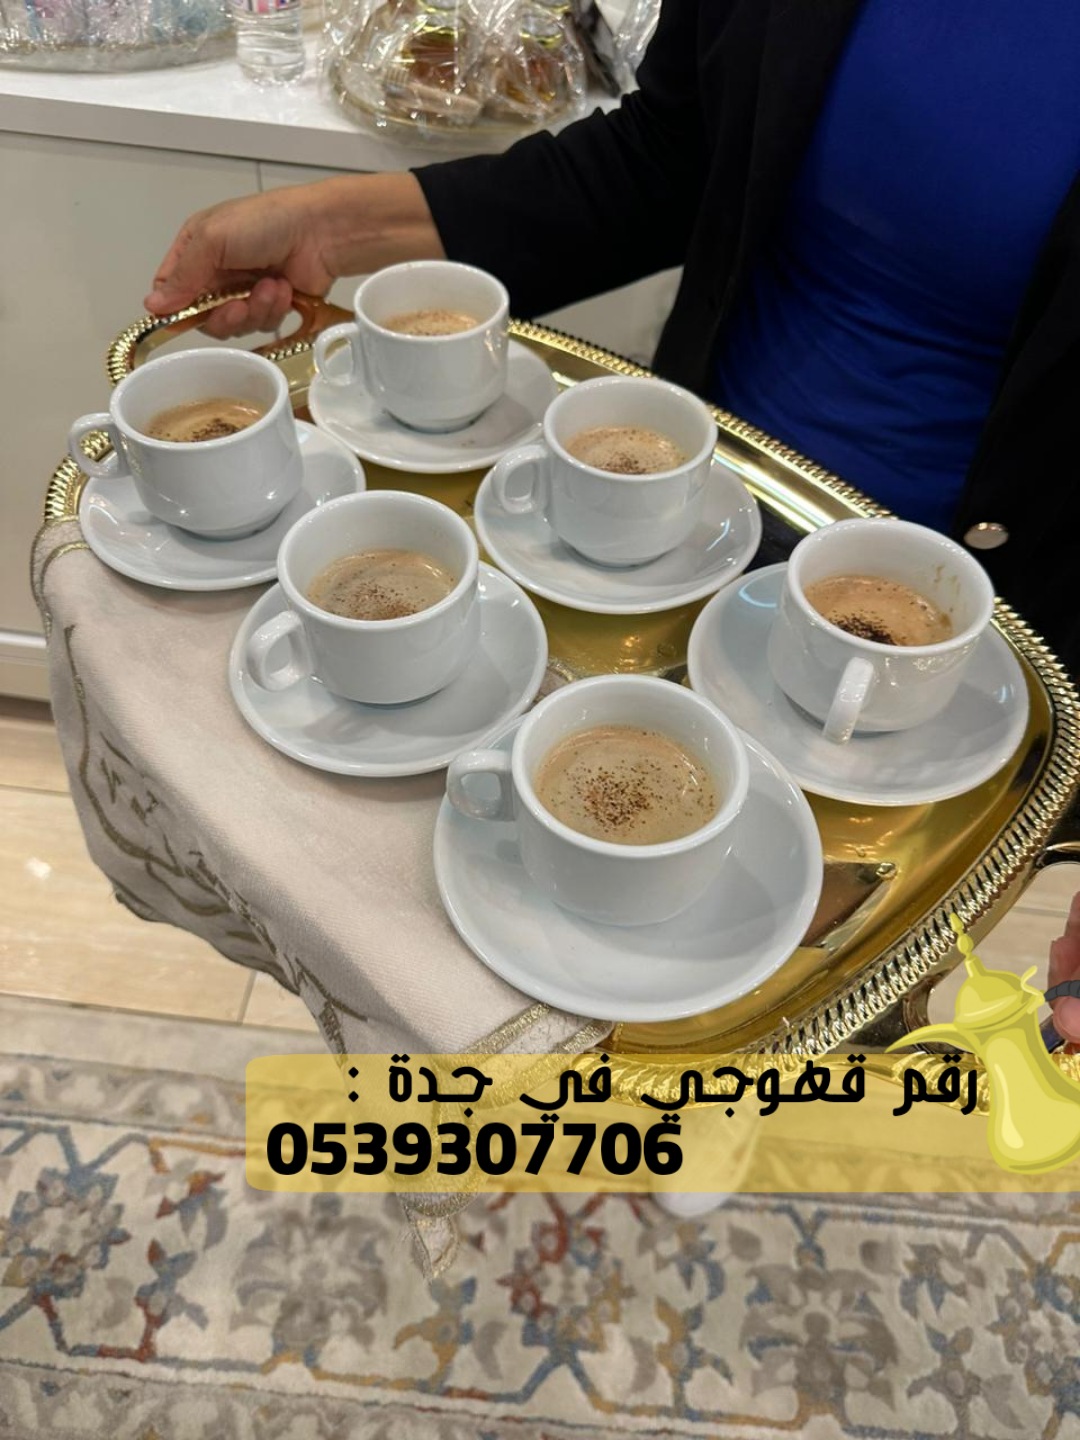 فريق صبابات قهوة قهوجي جدة,0539307706